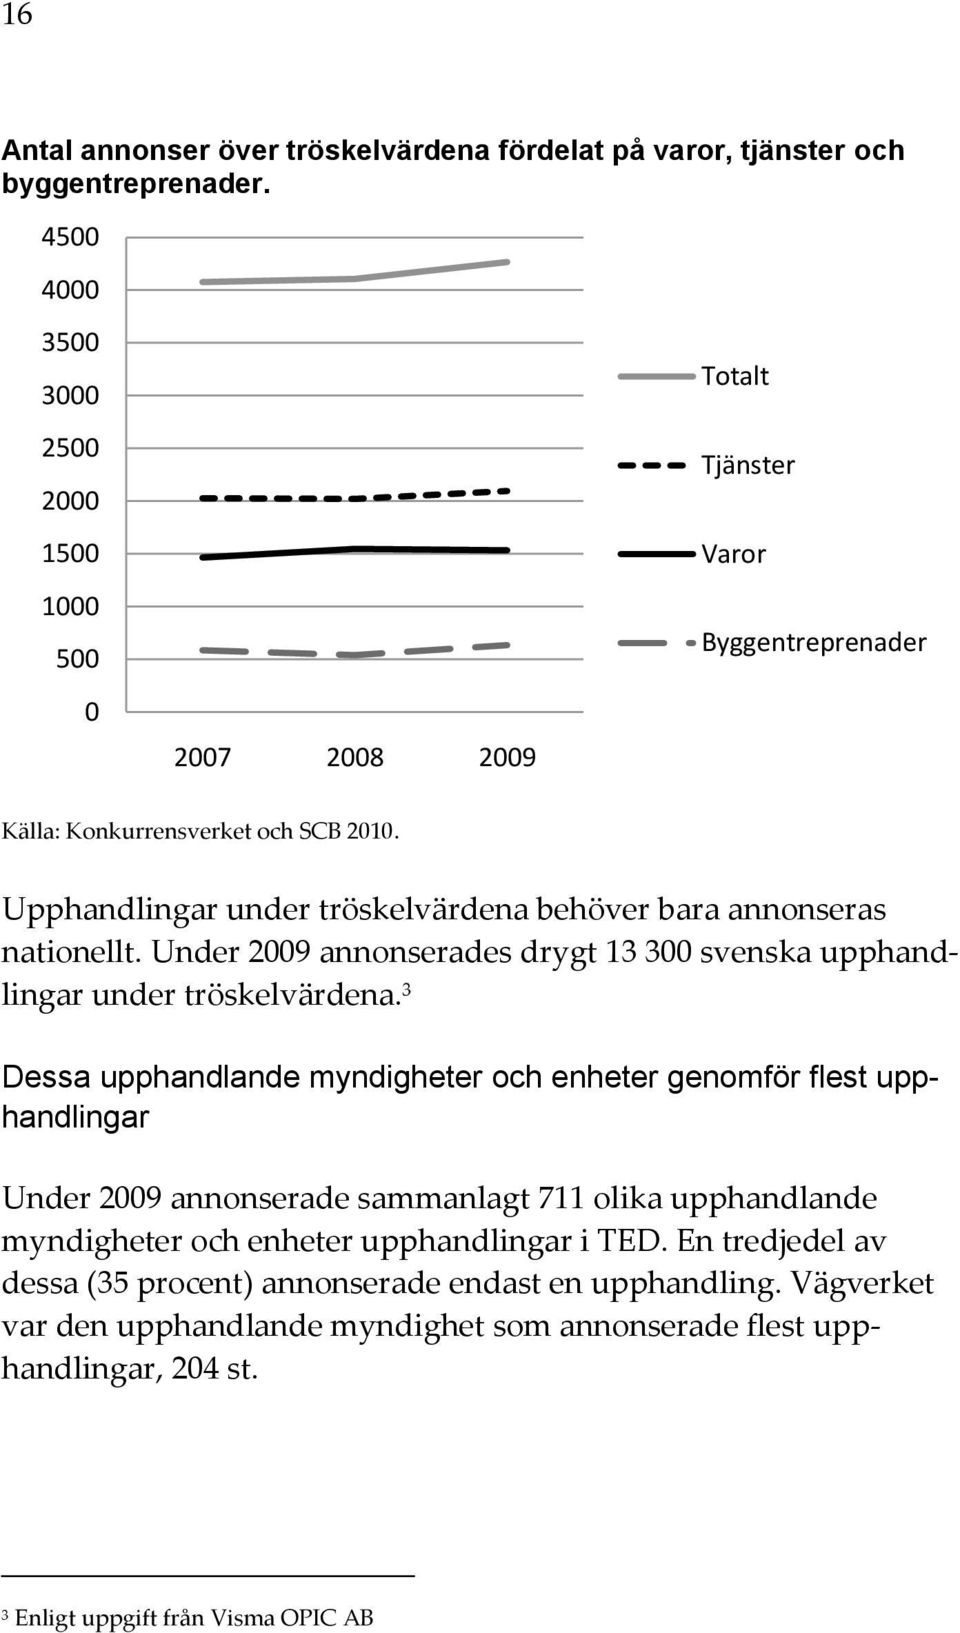 Upphandlingar under tröskelvärdena behöver bara annonseras nationellt. Under 2009 annonserades drygt 13 300 svenska upphandlingar under tröskelvärdena.